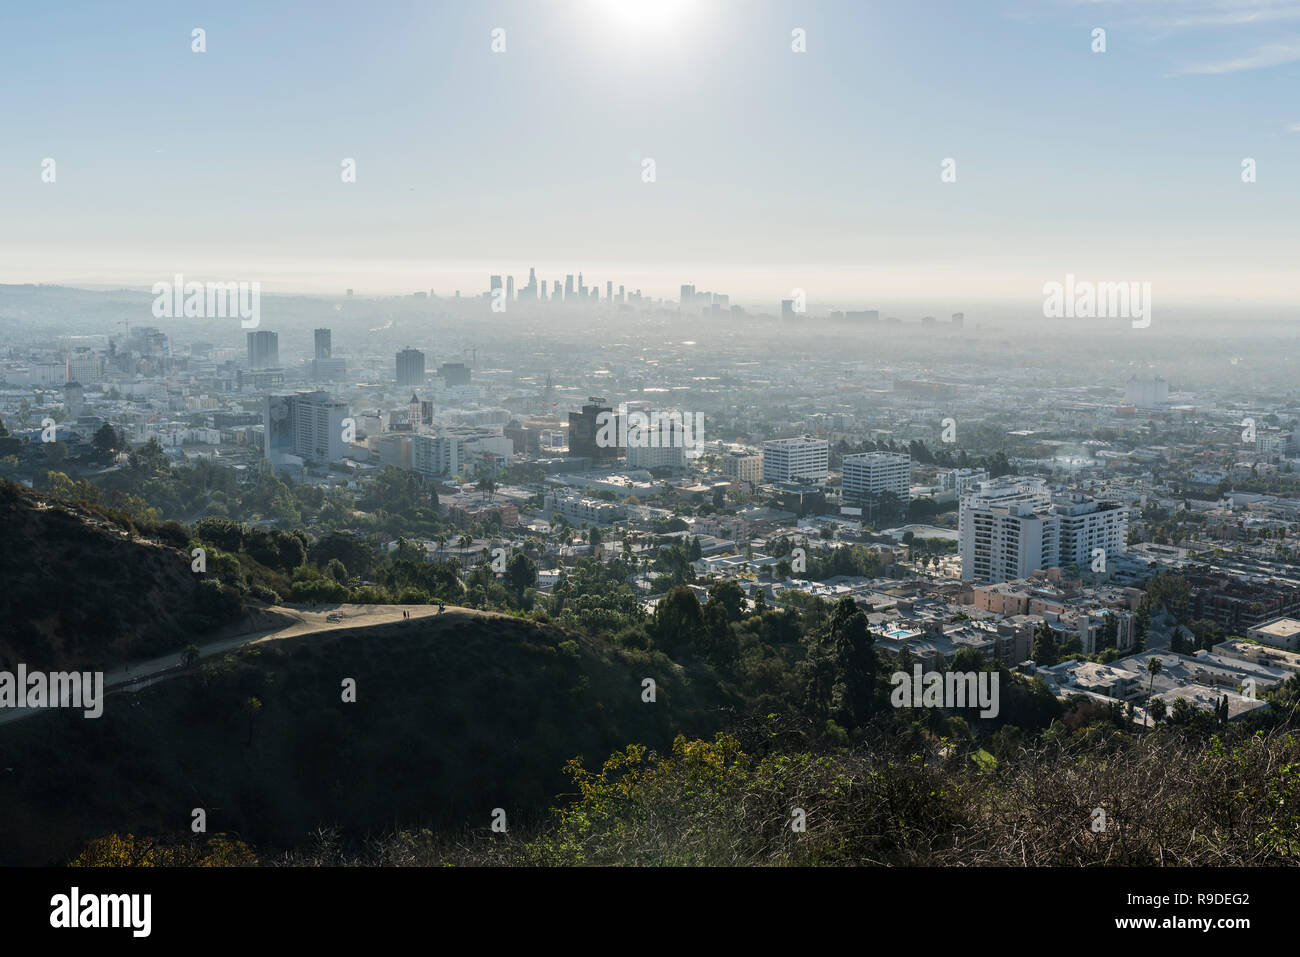 Los Angeles, California, Stati Uniti d'America - 16 dicembre 2018: Cityscape vista del Runyon Canyon Park sentieri escursionistici, Hollywood e Los Angeles. Foto Stock